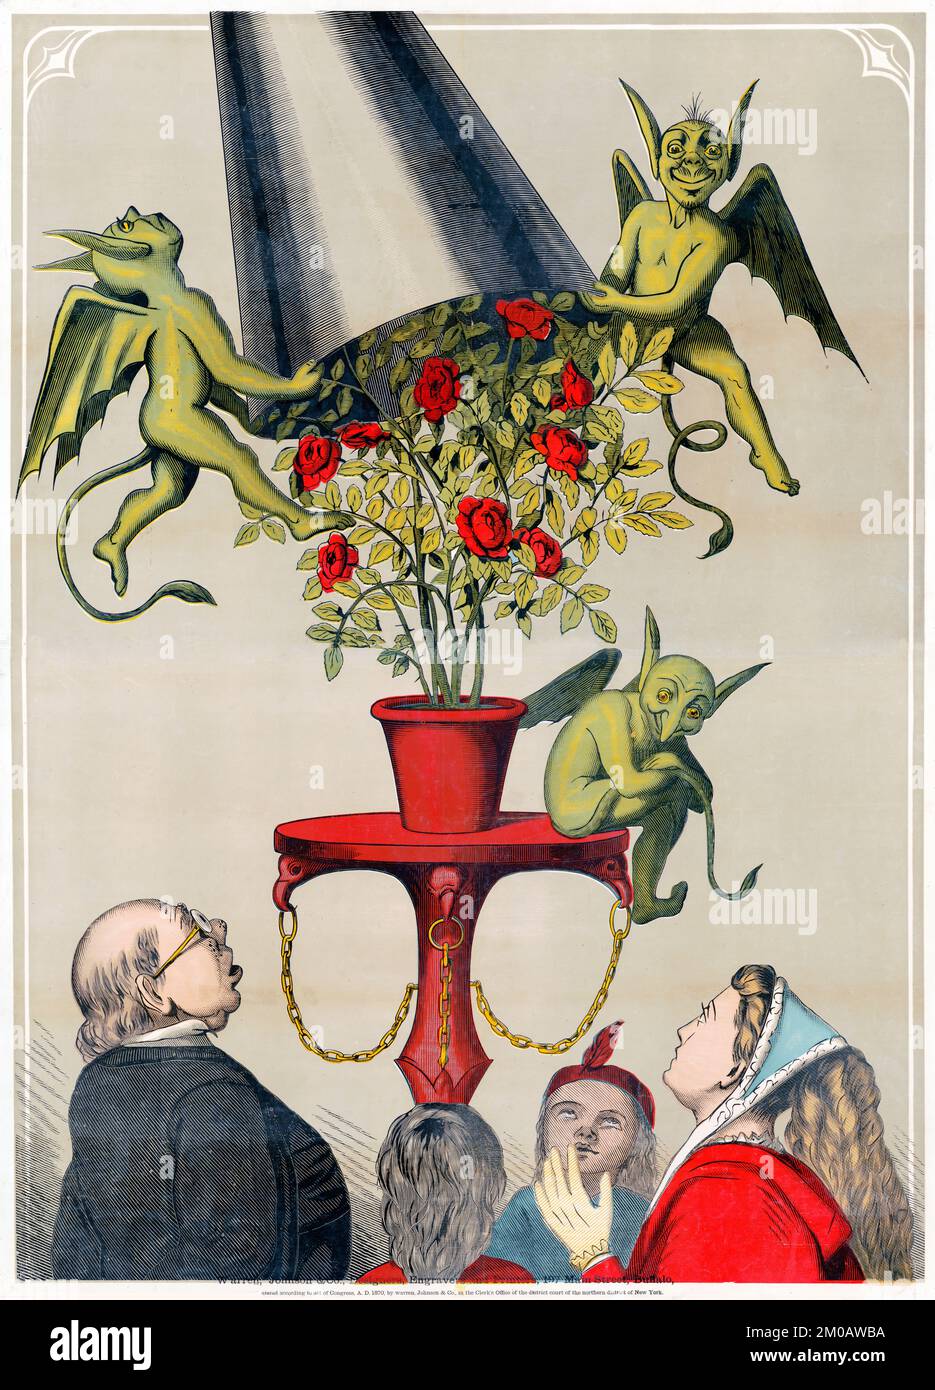 Das Zirkus-Aktienposter zeigt vier Personen, die drei grüne Dämonen auf dem Sockel sehen und dabei den Rosenstrauß von Warren, Johnson & Co 1870 abdecken Stockfoto